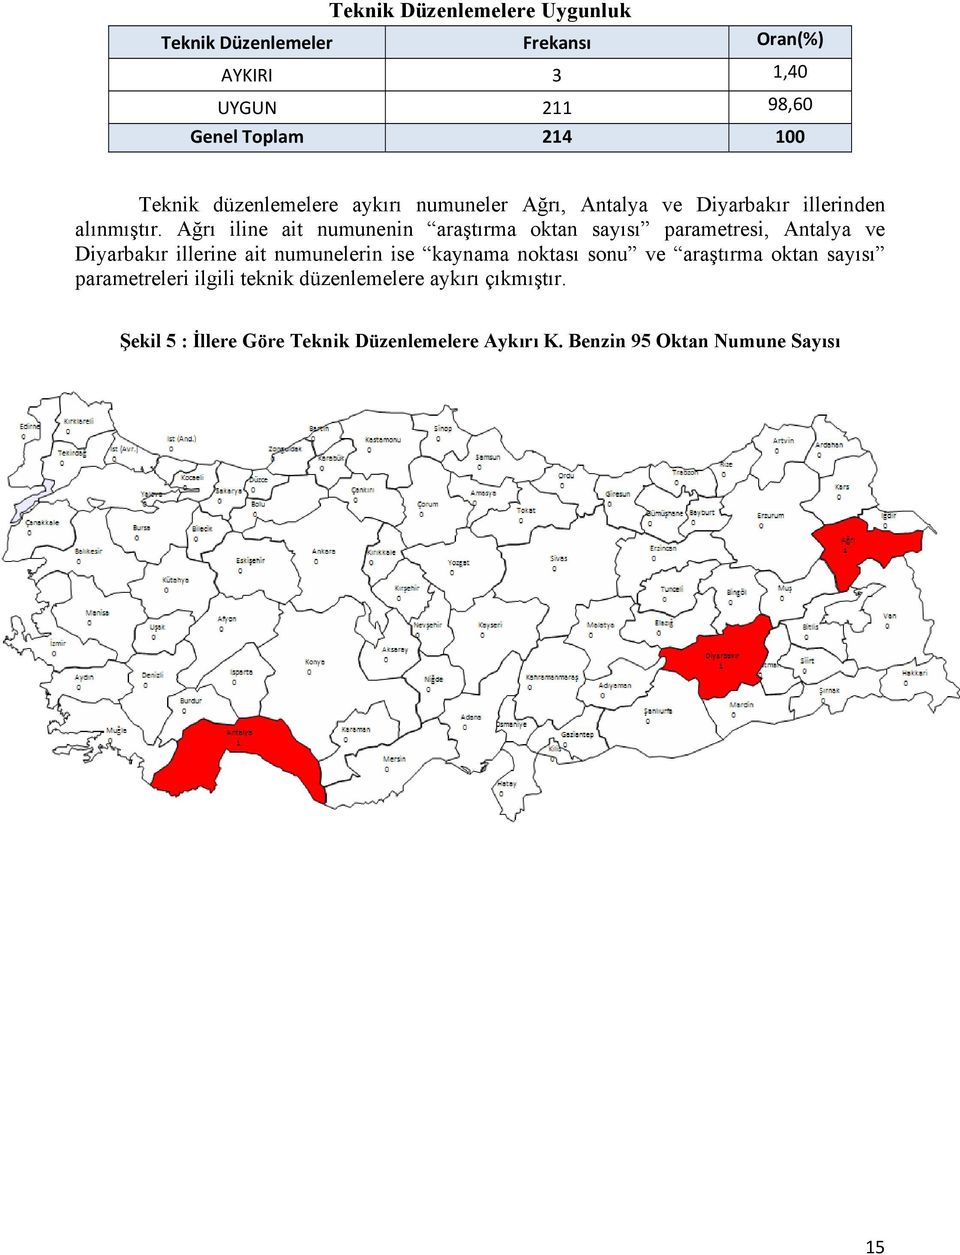 Ağrı iline ait numunenin araştırma oktan sayısı parametresi, Antalya ve Diyarbakır illerine ait numunelerin ise kaynama noktası